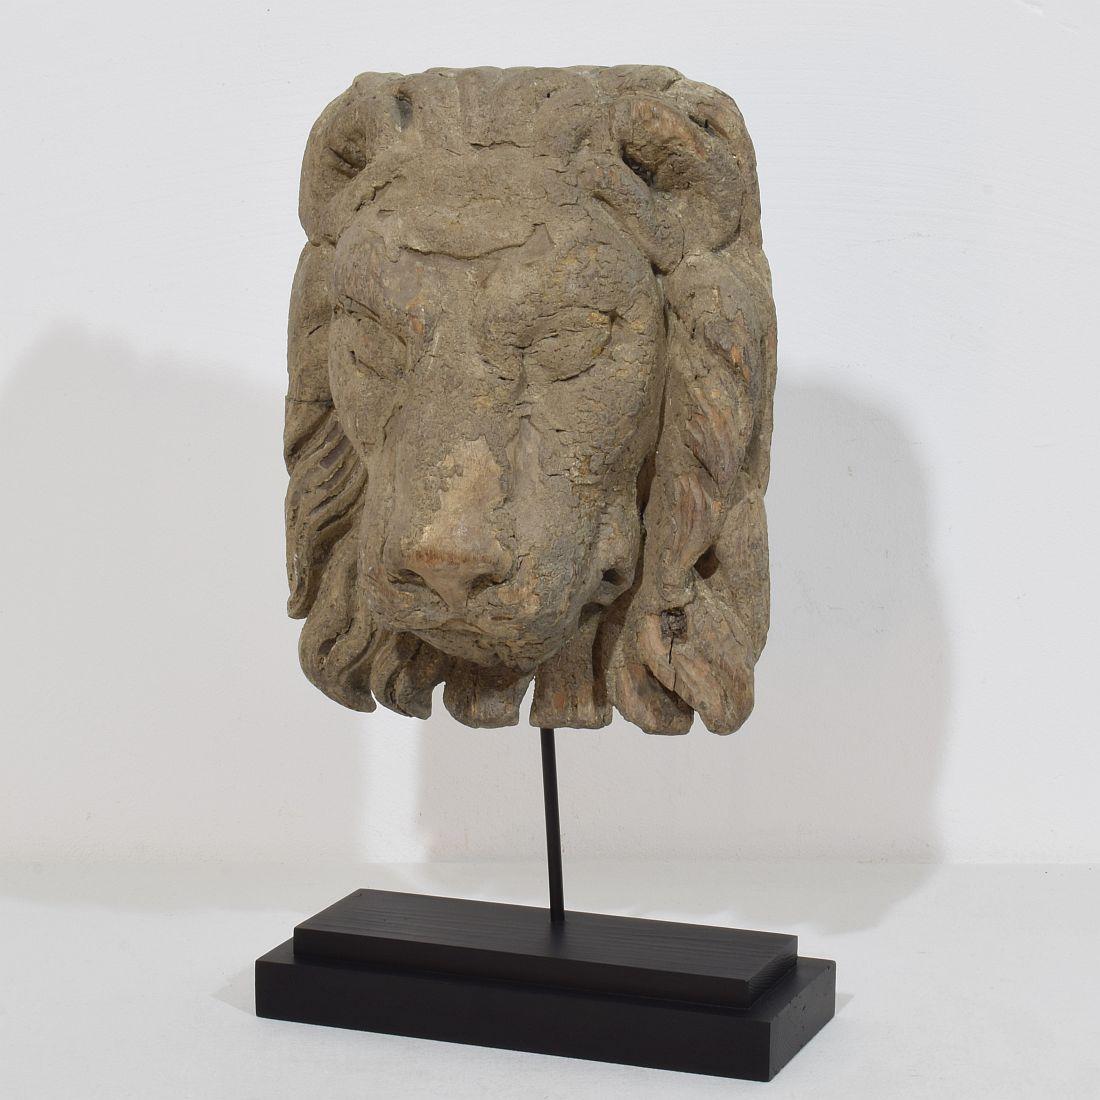 Magnifique tête de lion en bois sculptée à la main, très patinée en raison de son extrême ancienneté.
Région Venise ,Italie circa 1650-1750
Les mesures incluent la base en bois. 